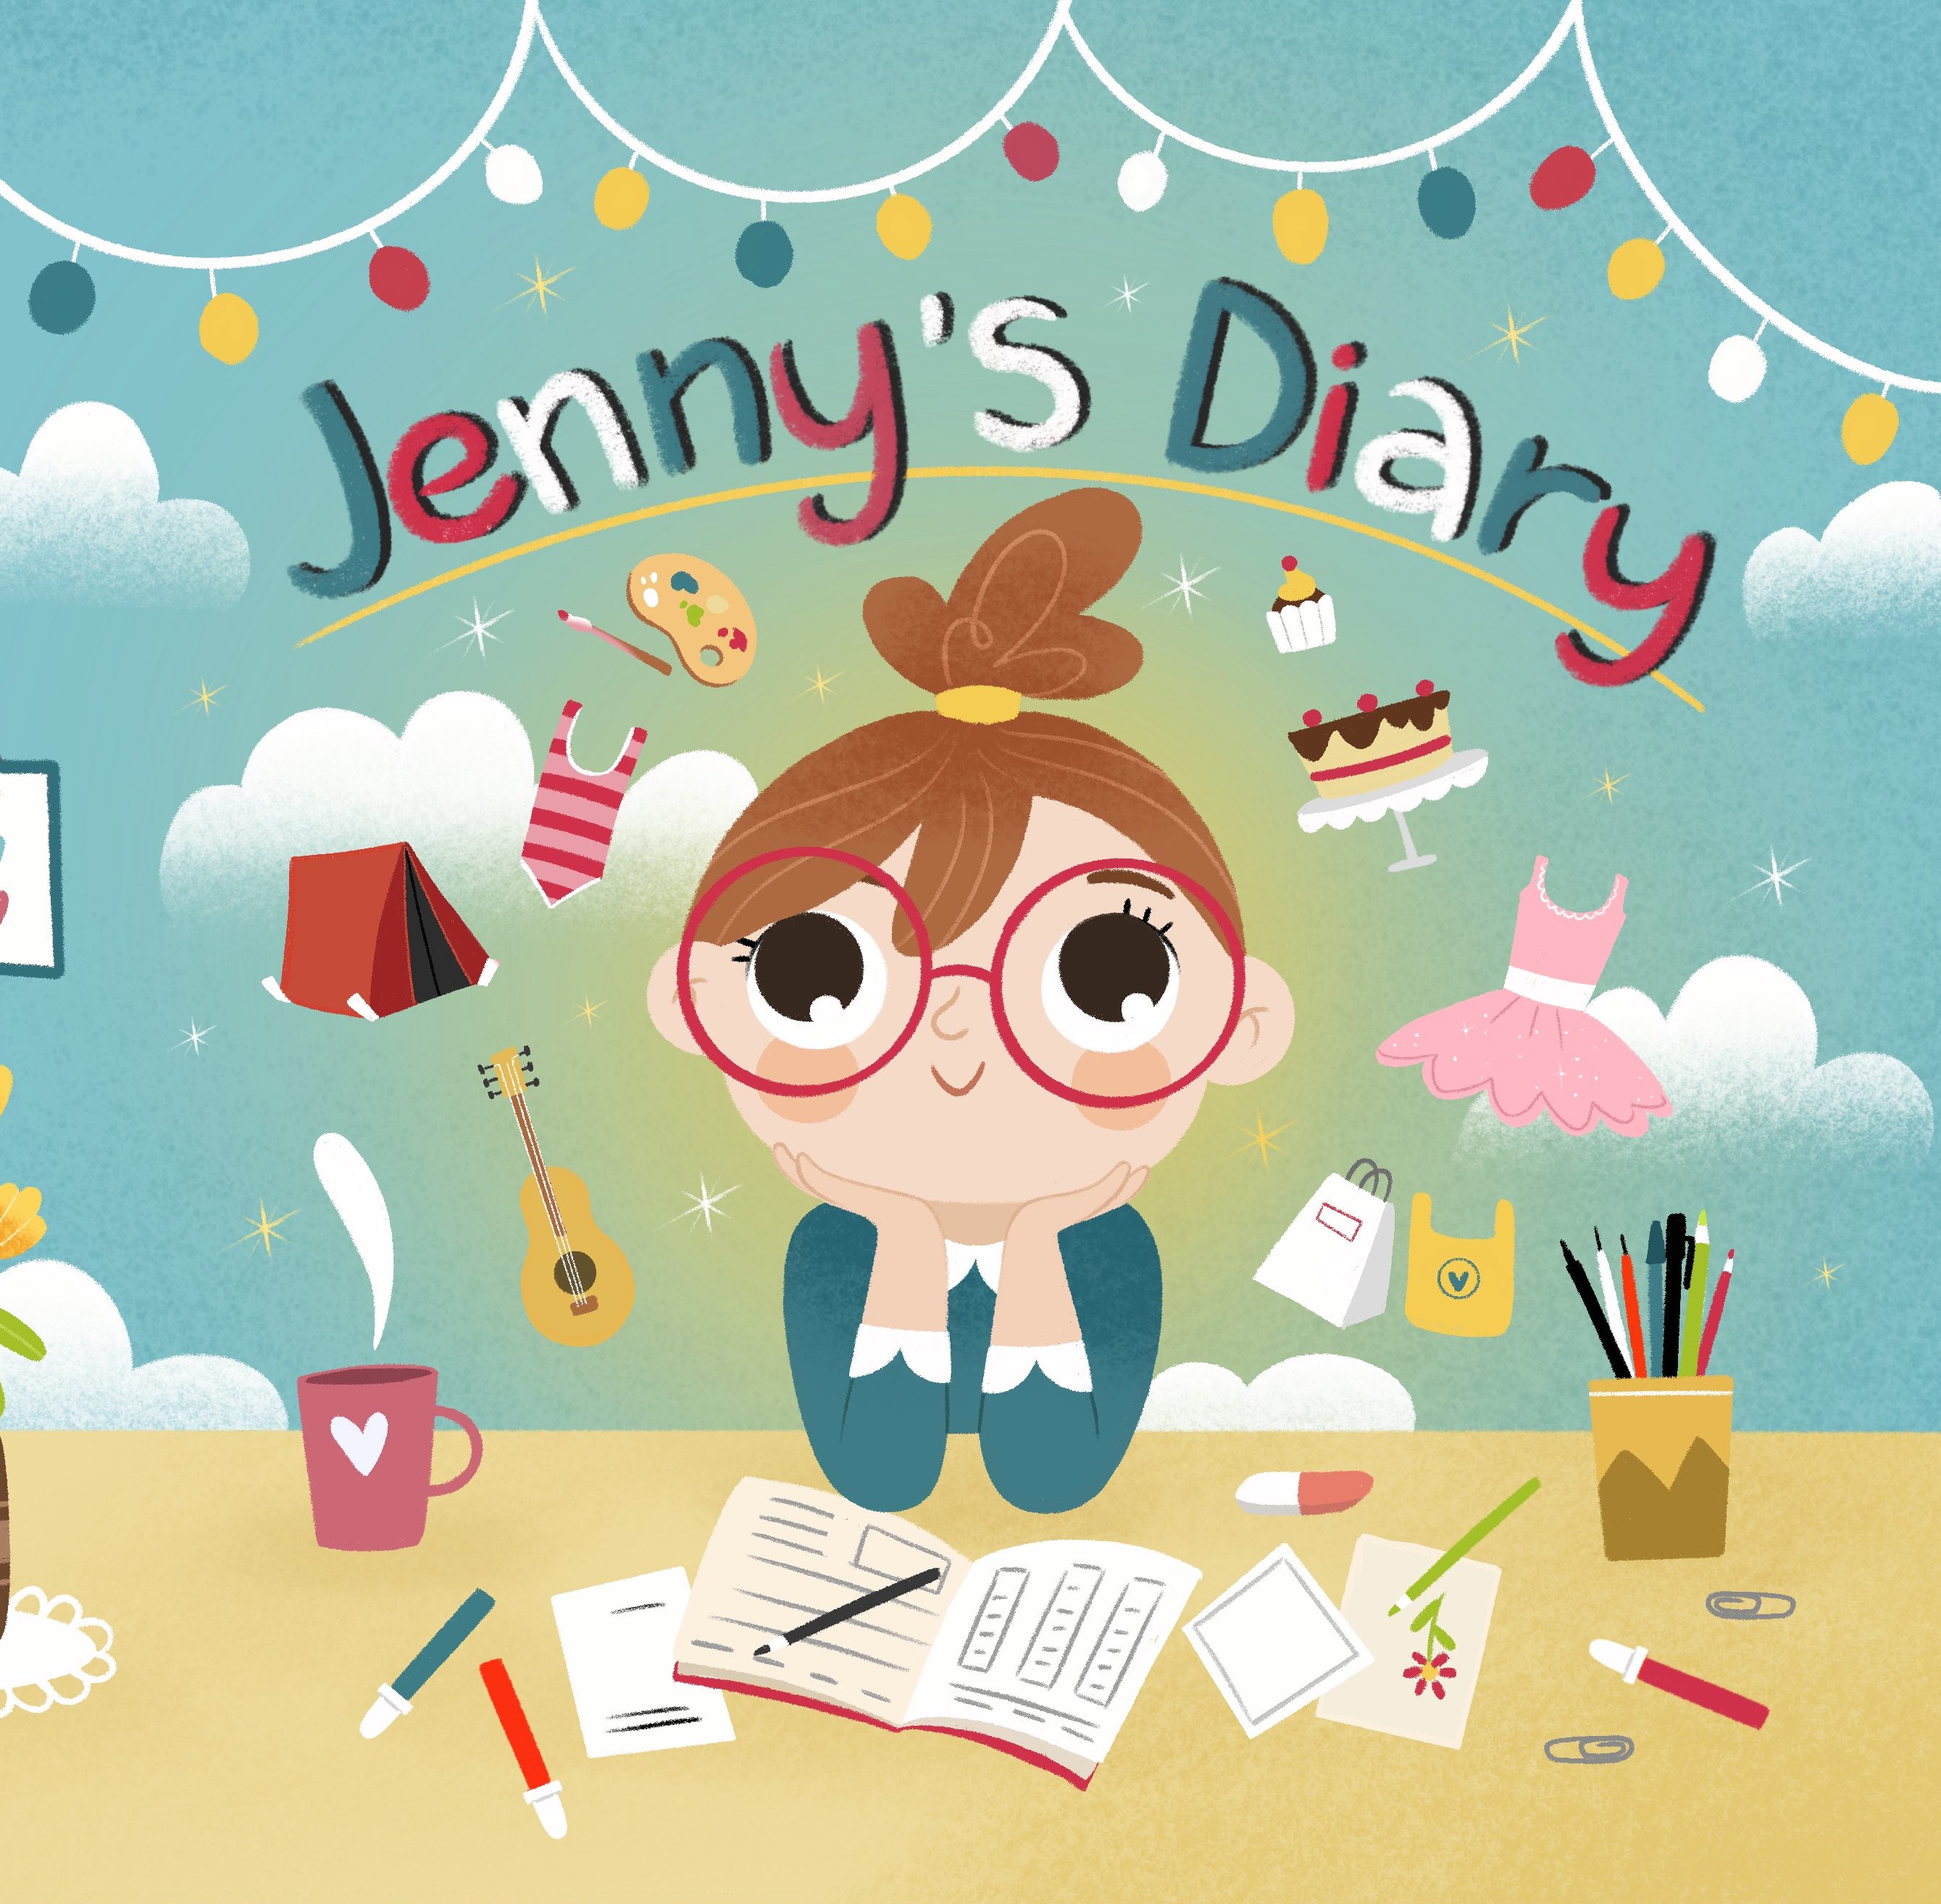 Jenny’s_Diary_-_Cover